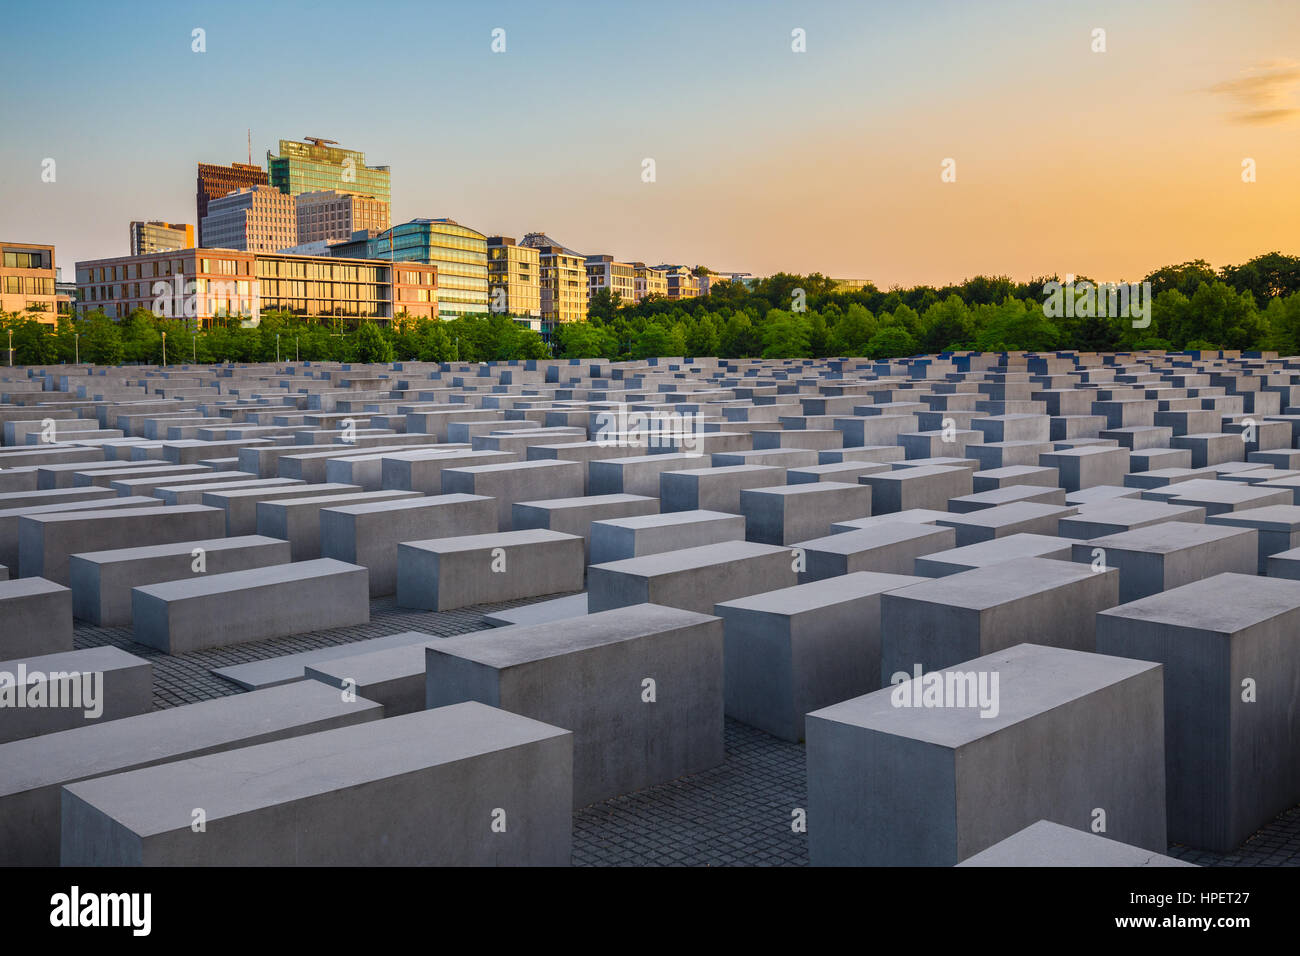 Mémorial de l'holocauste juif célèbre près de Brandenburger Tor (Porte de Brandebourg) au coucher du soleil en été, Berlin, Allemagne Banque D'Images